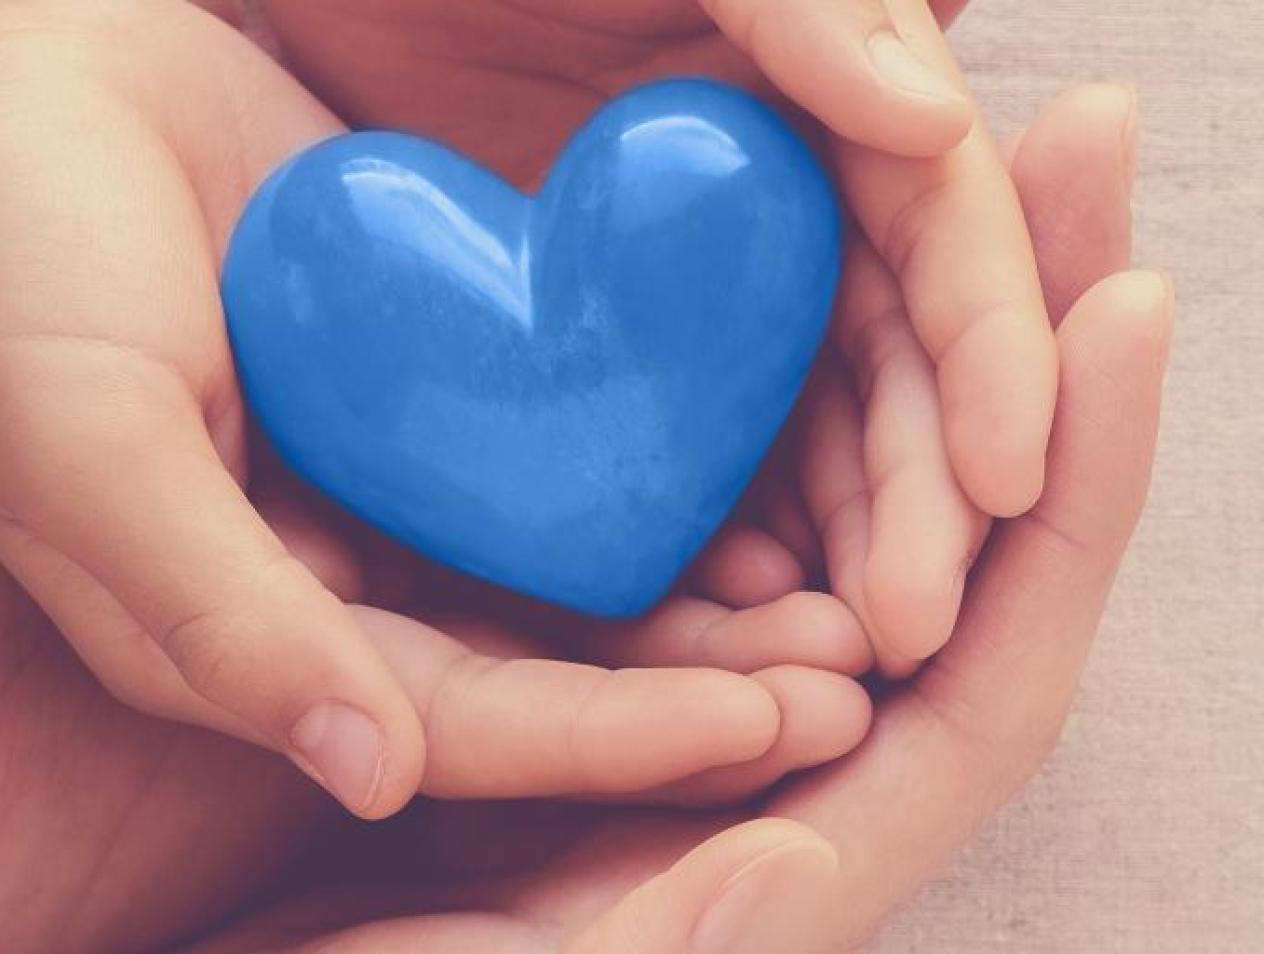 Hands holding blue heart